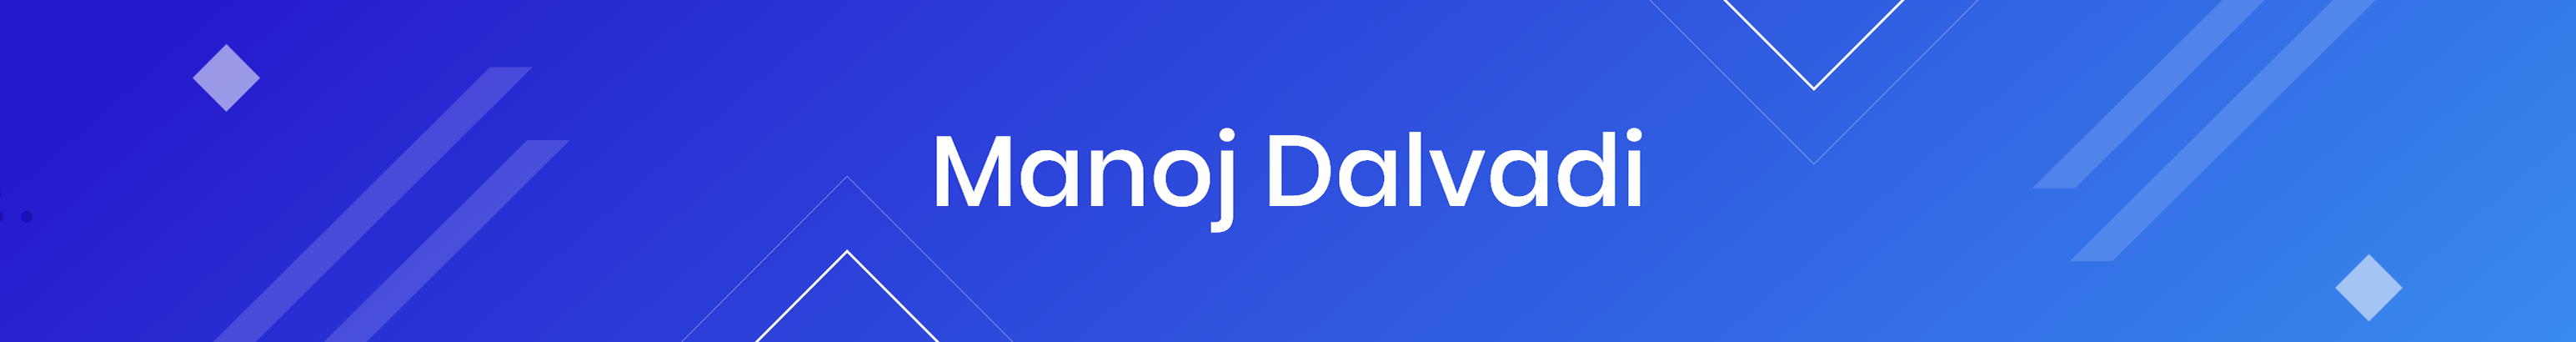 Manoj dalvadi's profile banner